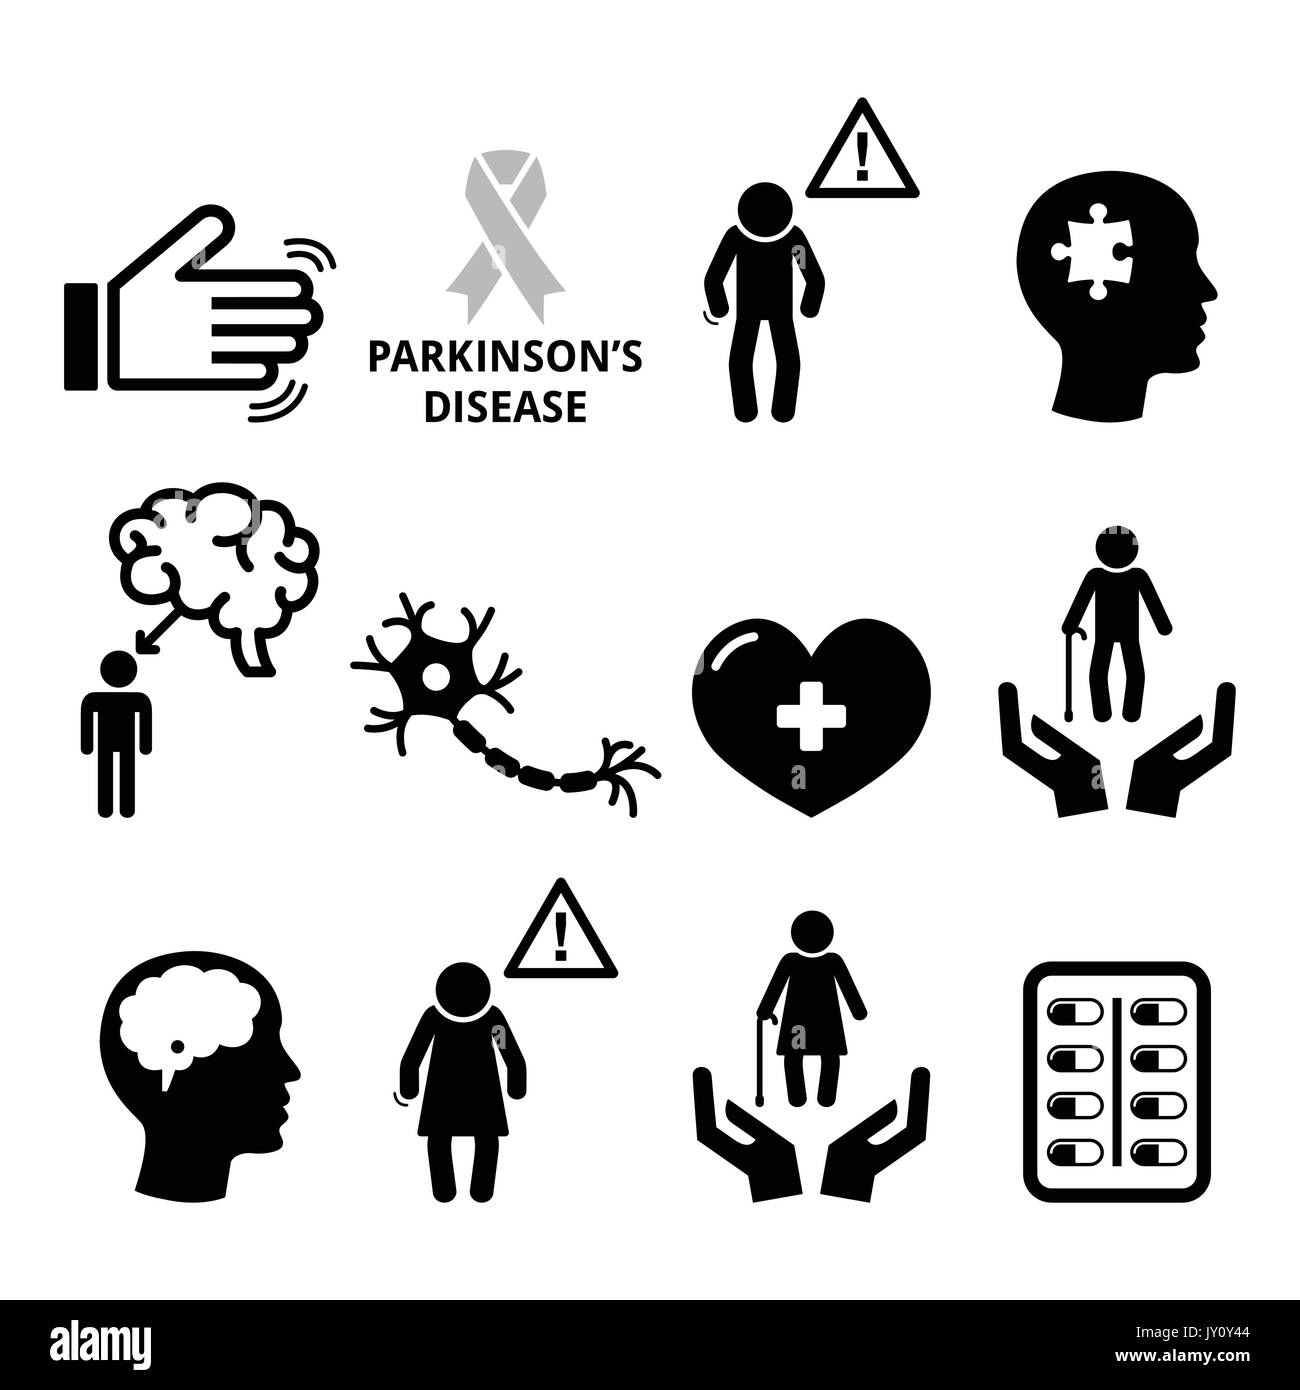 La maladie de Parkinson, les icônes de la santé des aînés définissent les icônes vectorielles comme étant des personnes âgées, la sensibilisation à la maladie de Parkinson Illustration de Vecteur